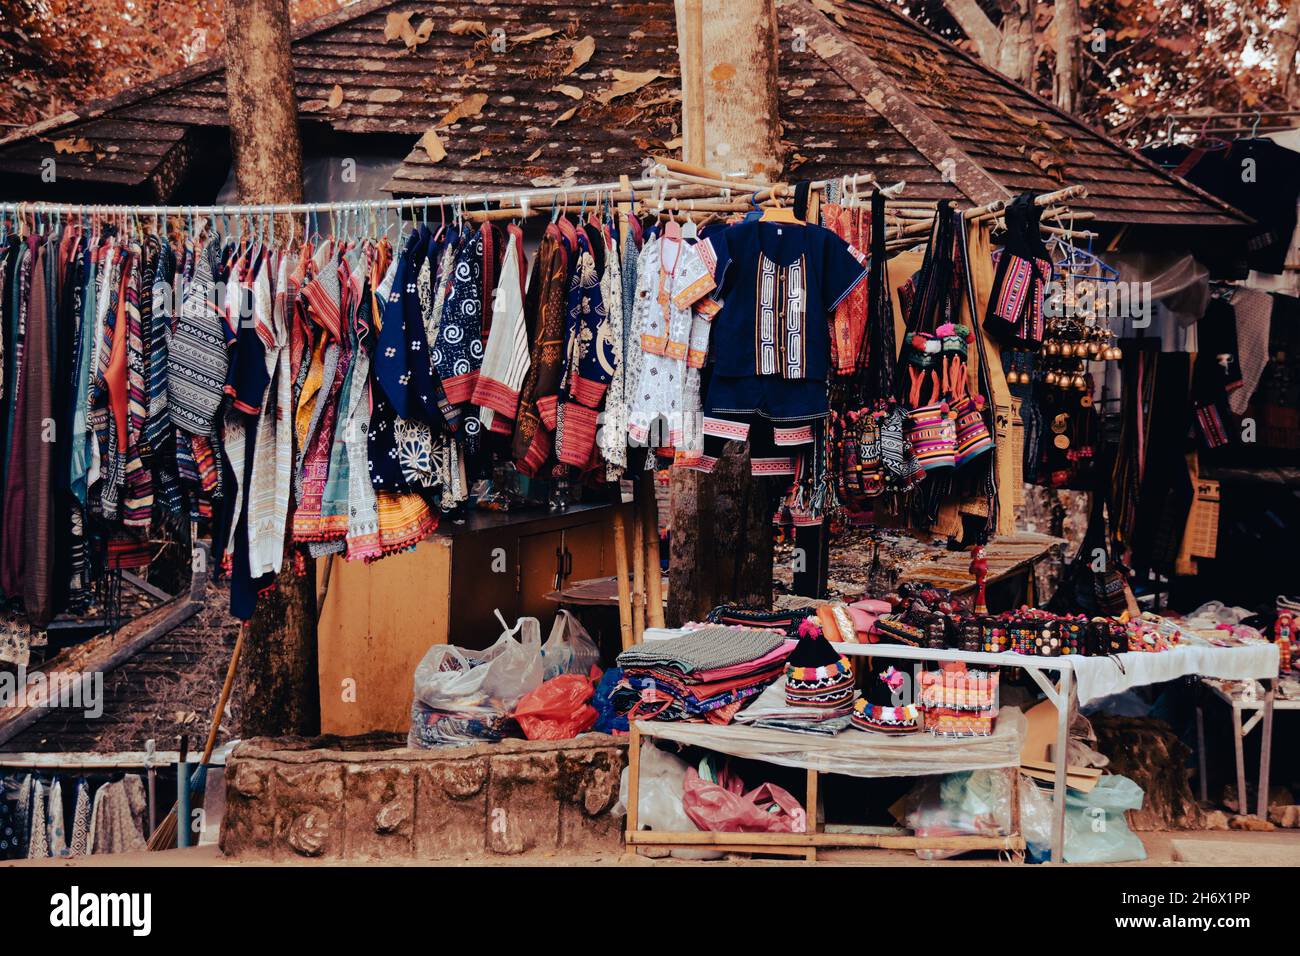 Boutique vendant des vêtements traditionnels Hmong et d'autres articles indigènes pour souvenirs touristiques à Chiang rai, Thaïlande Banque D'Images